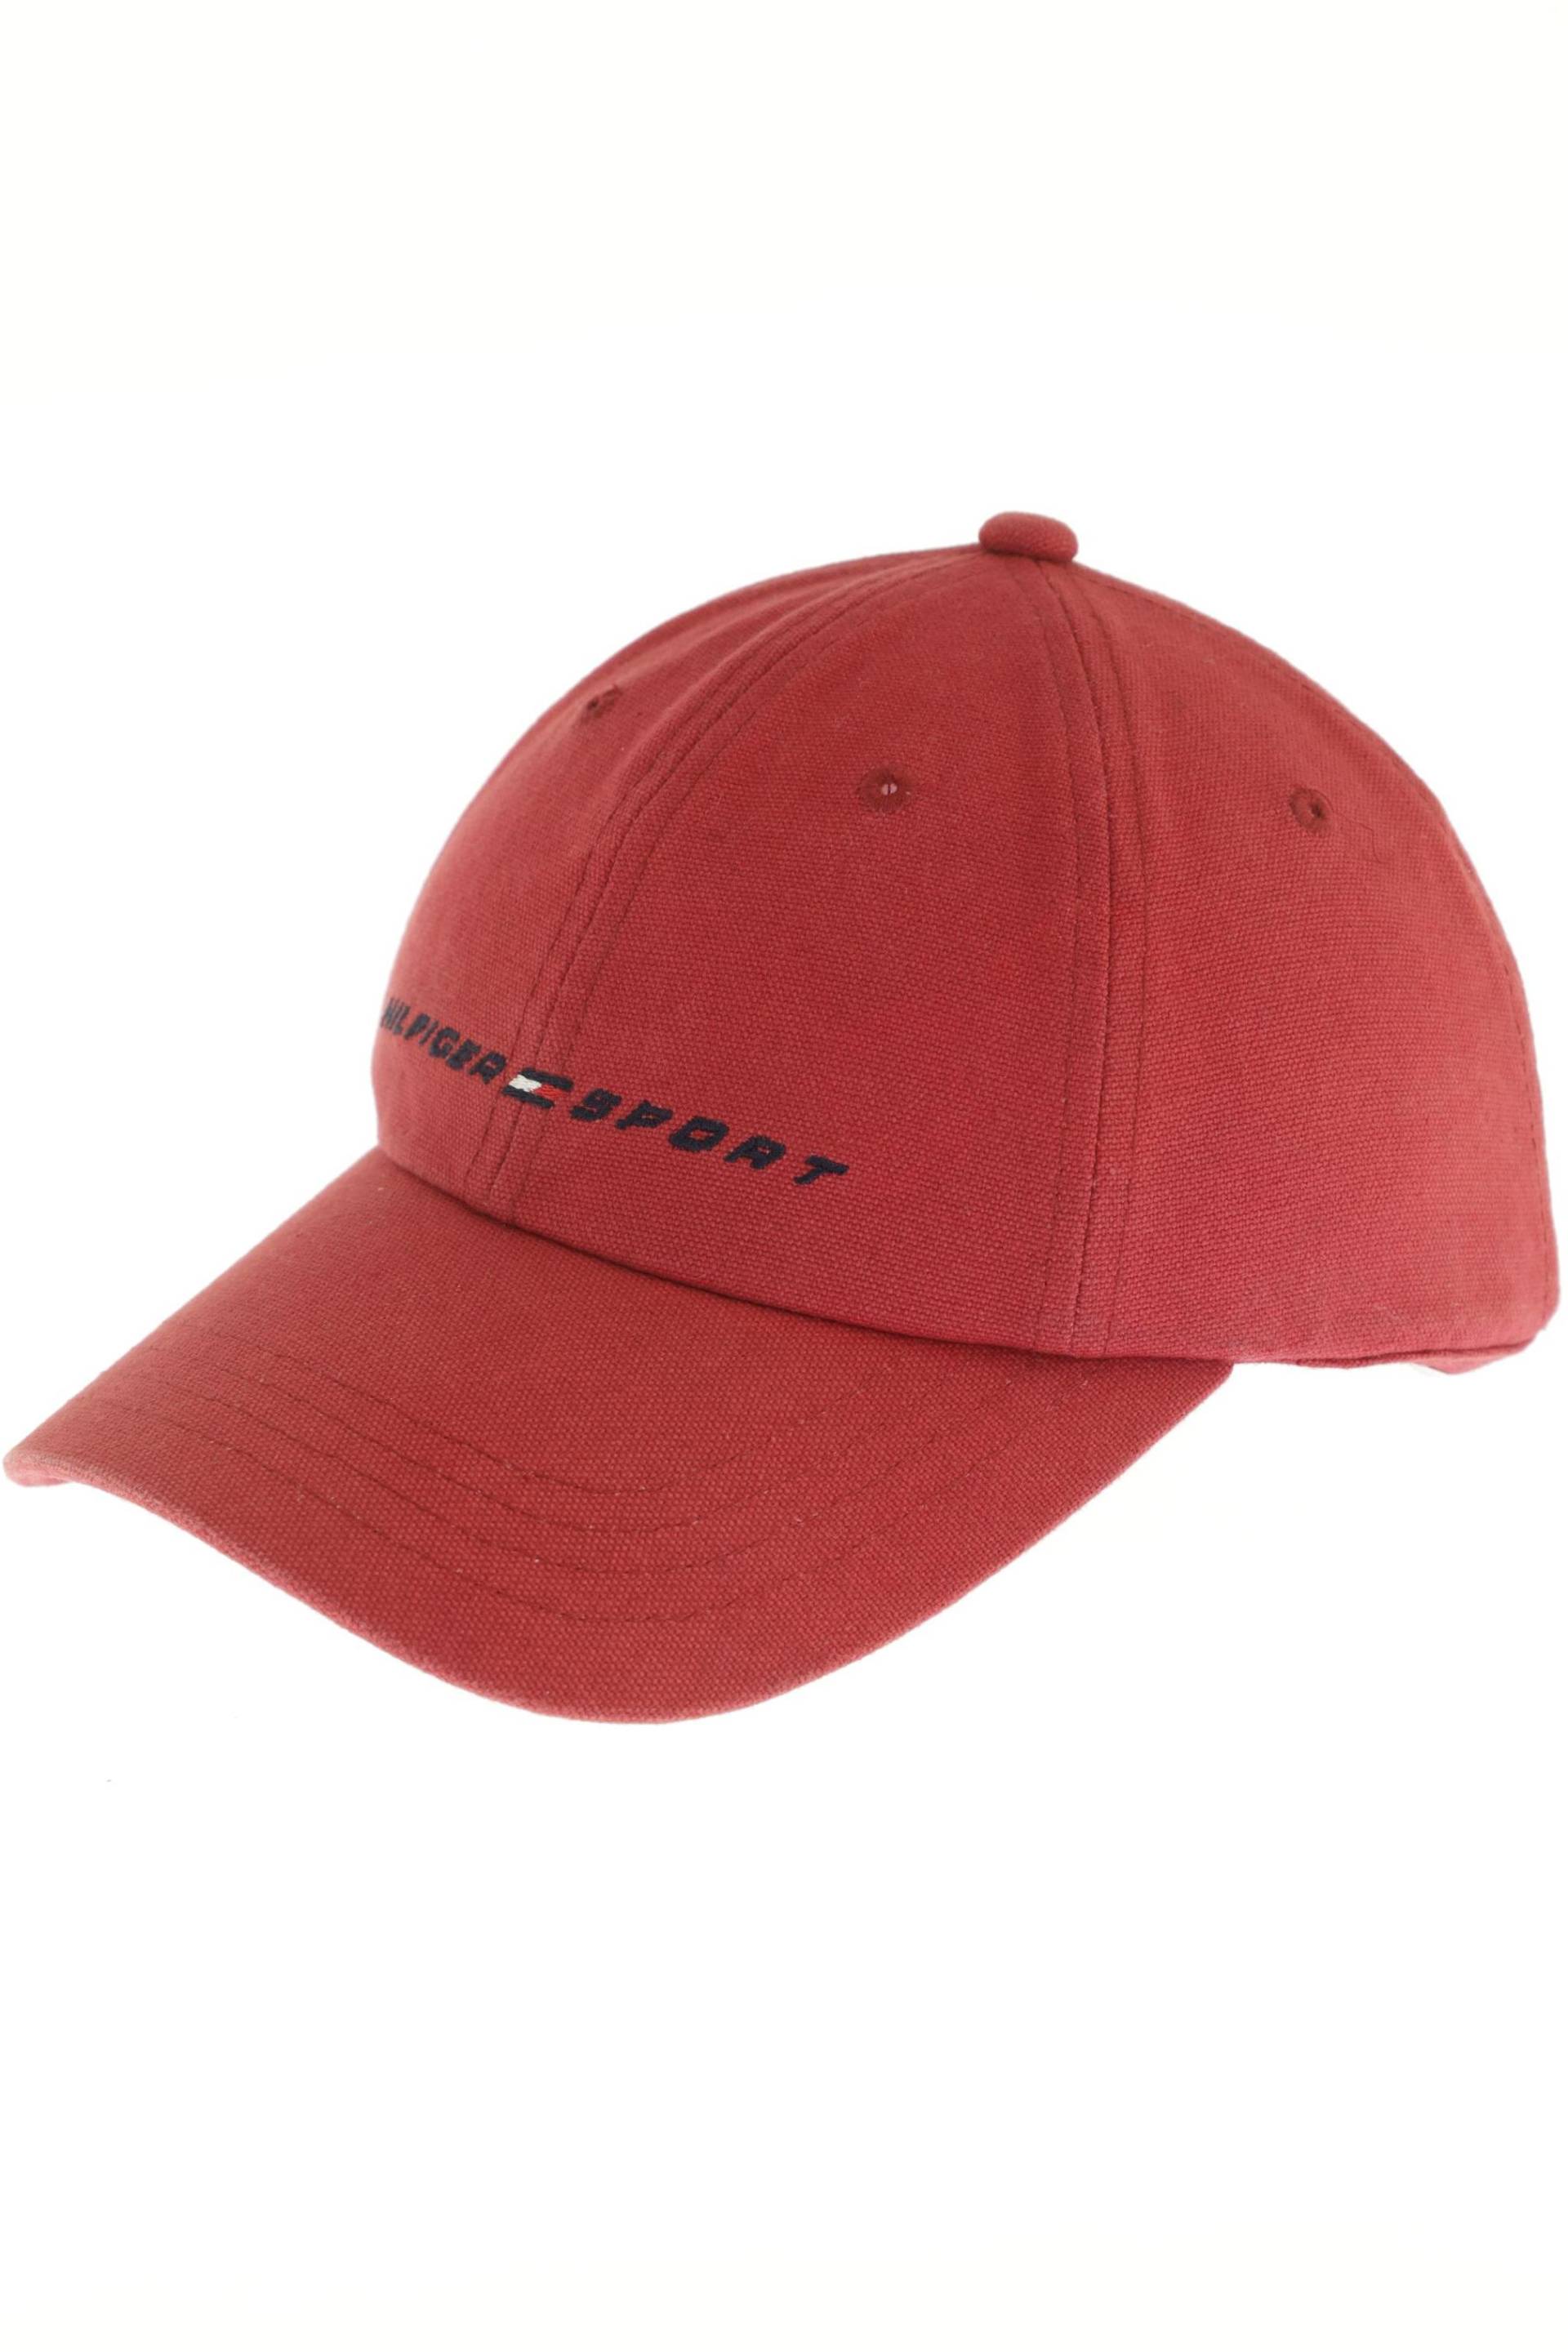 Tommy Hilfiger Damen Hut/Mütze, rot von Tommy Hilfiger